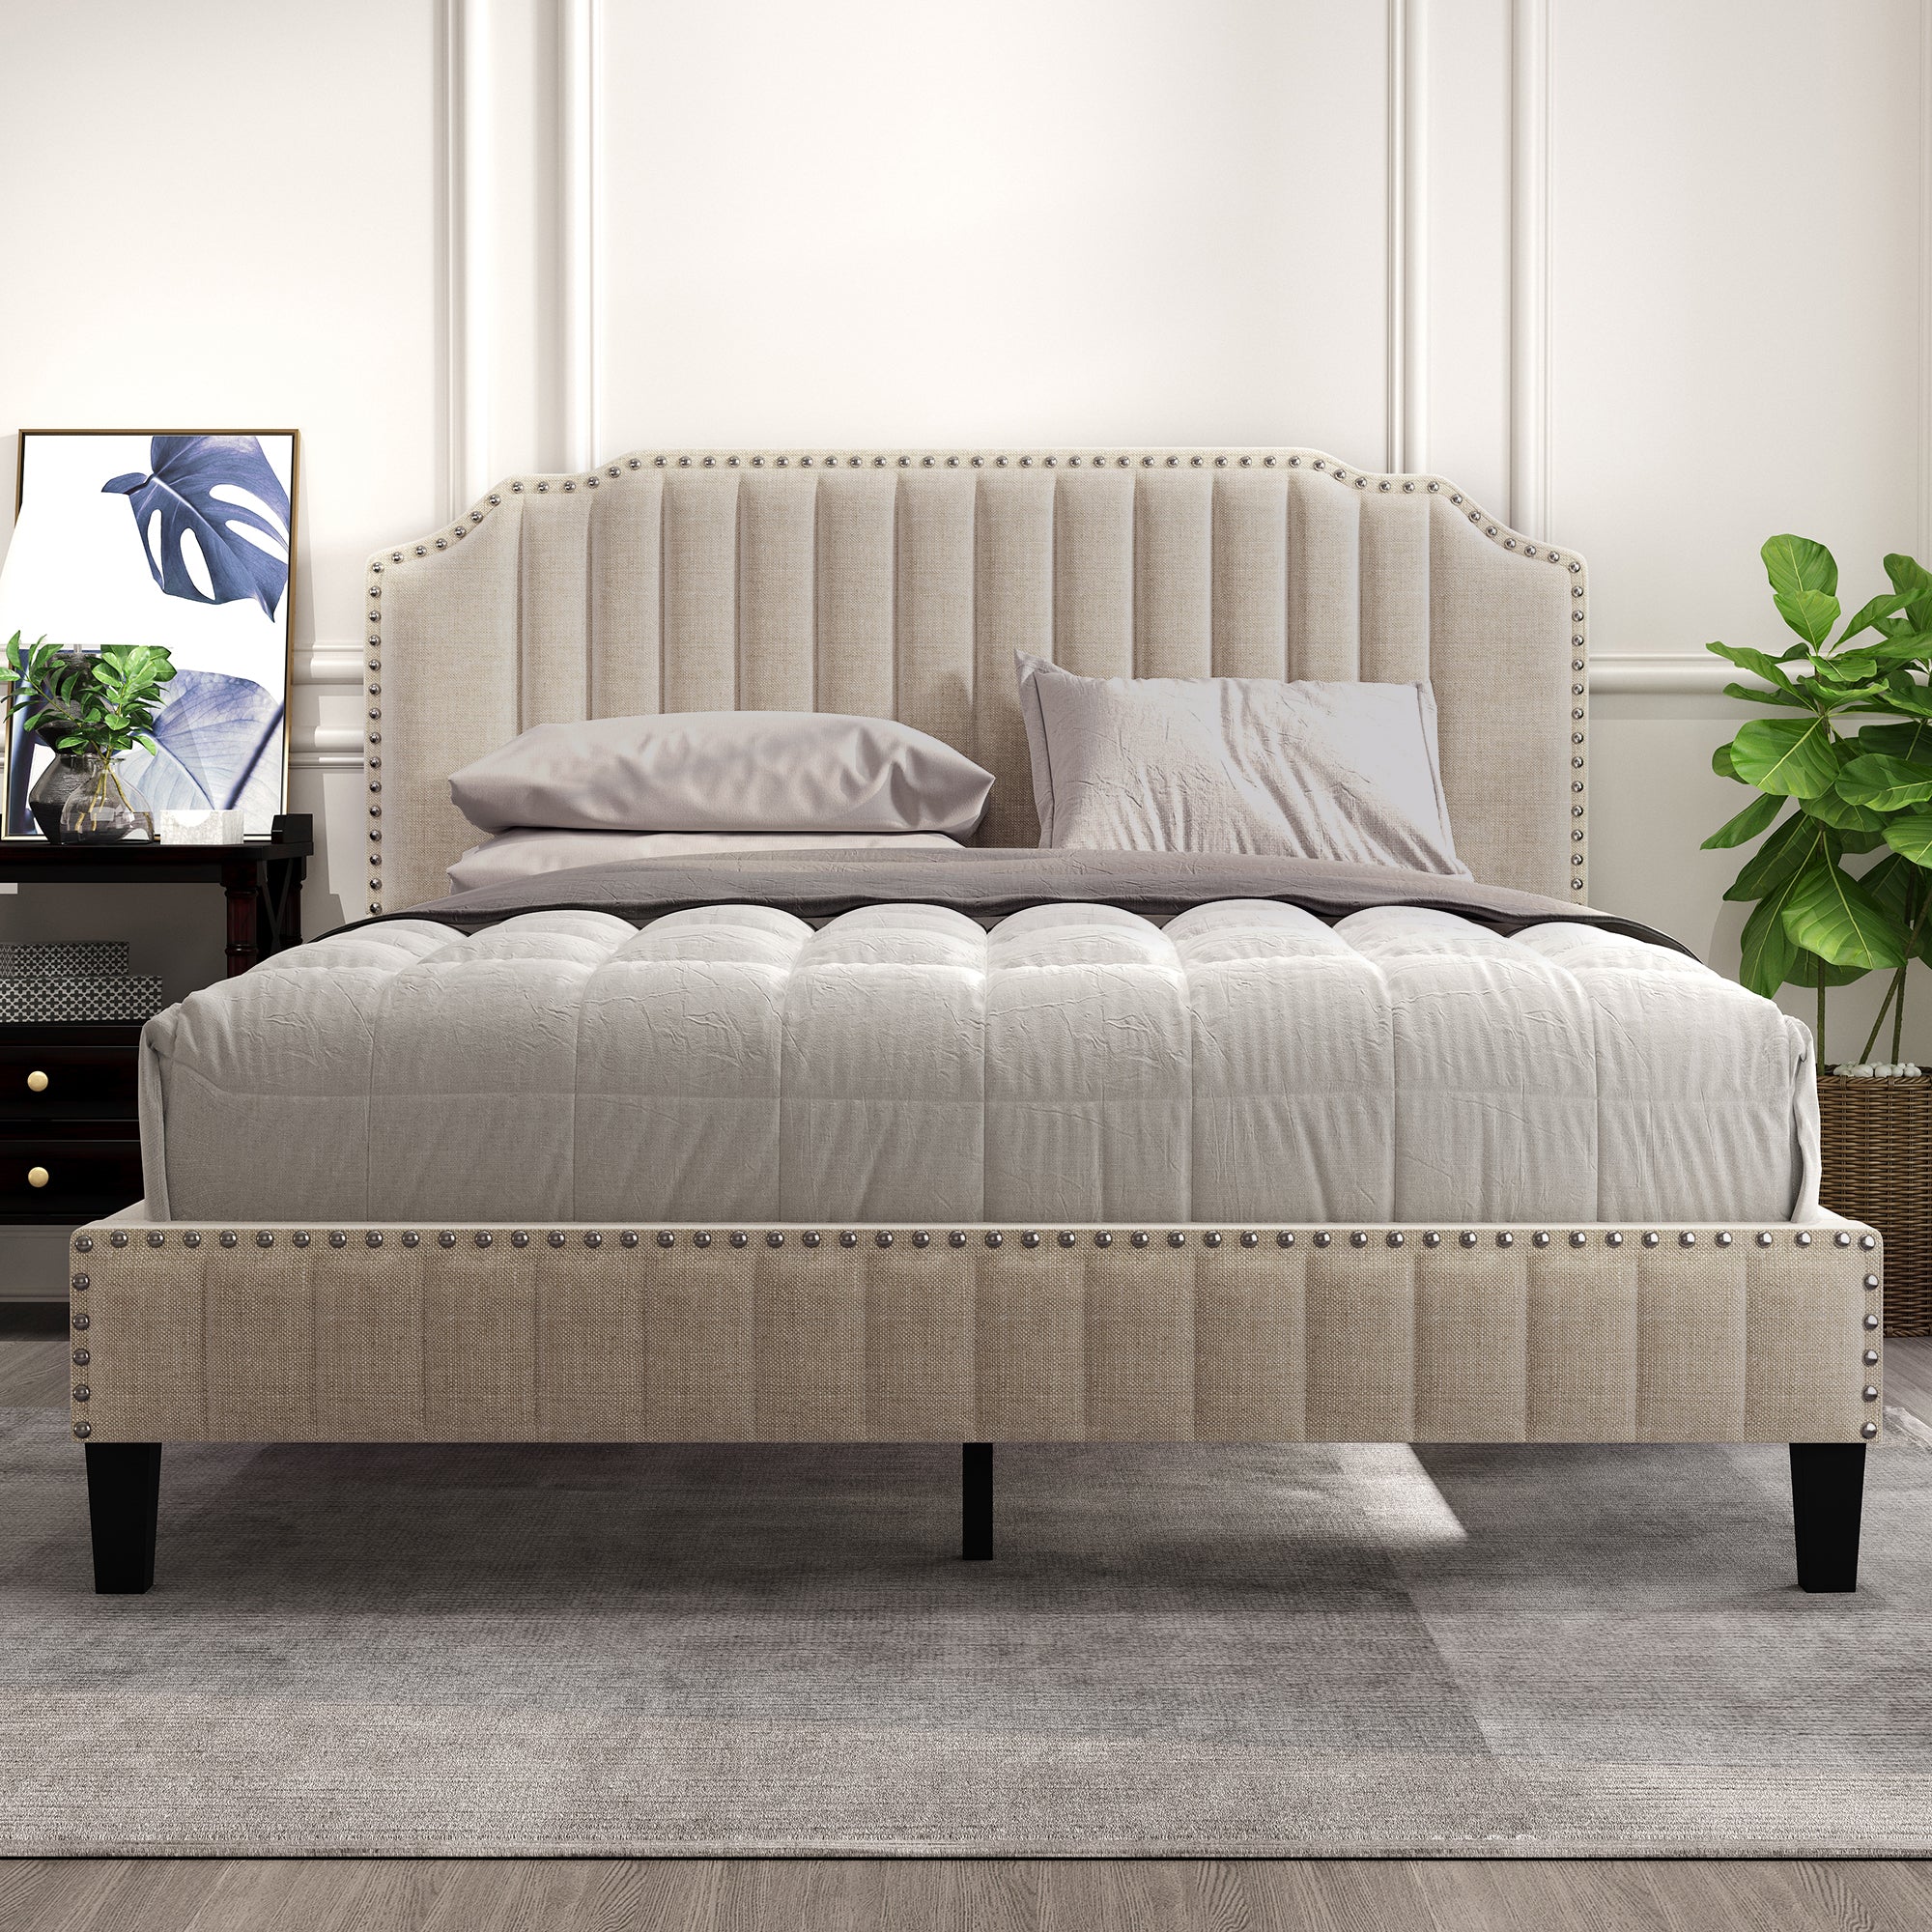 Modern Linen Curved Upholstered Platform Bed , Solid beige-upholstered